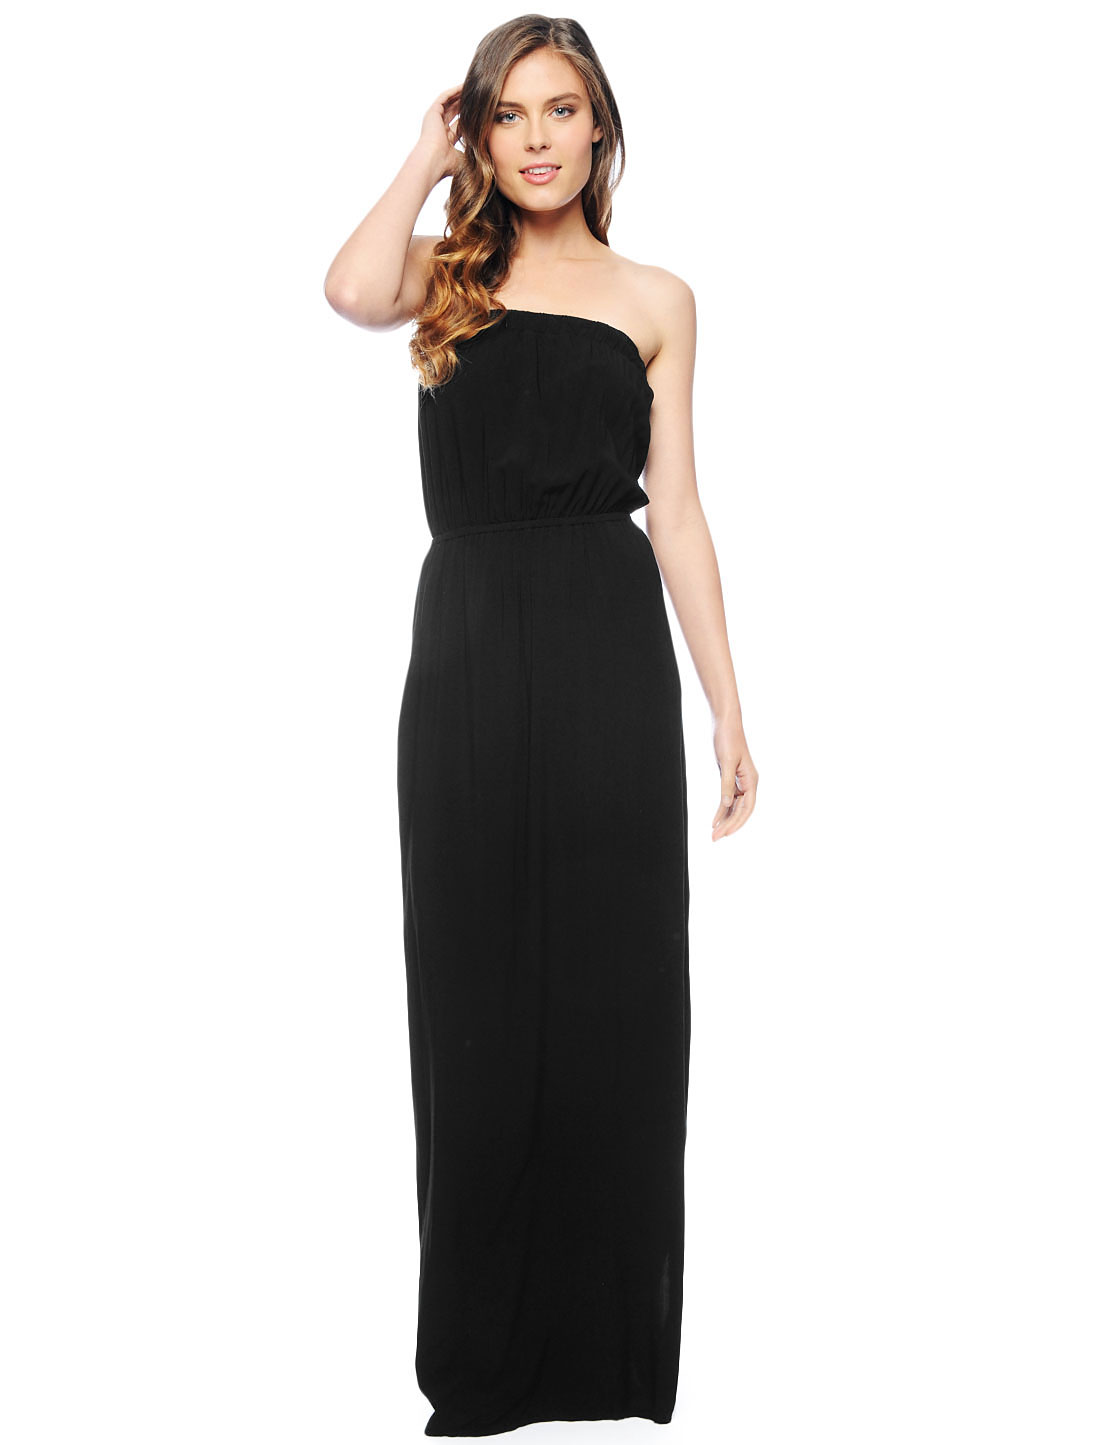 Lyst - Splendid Strapless Maxi Dress in Black